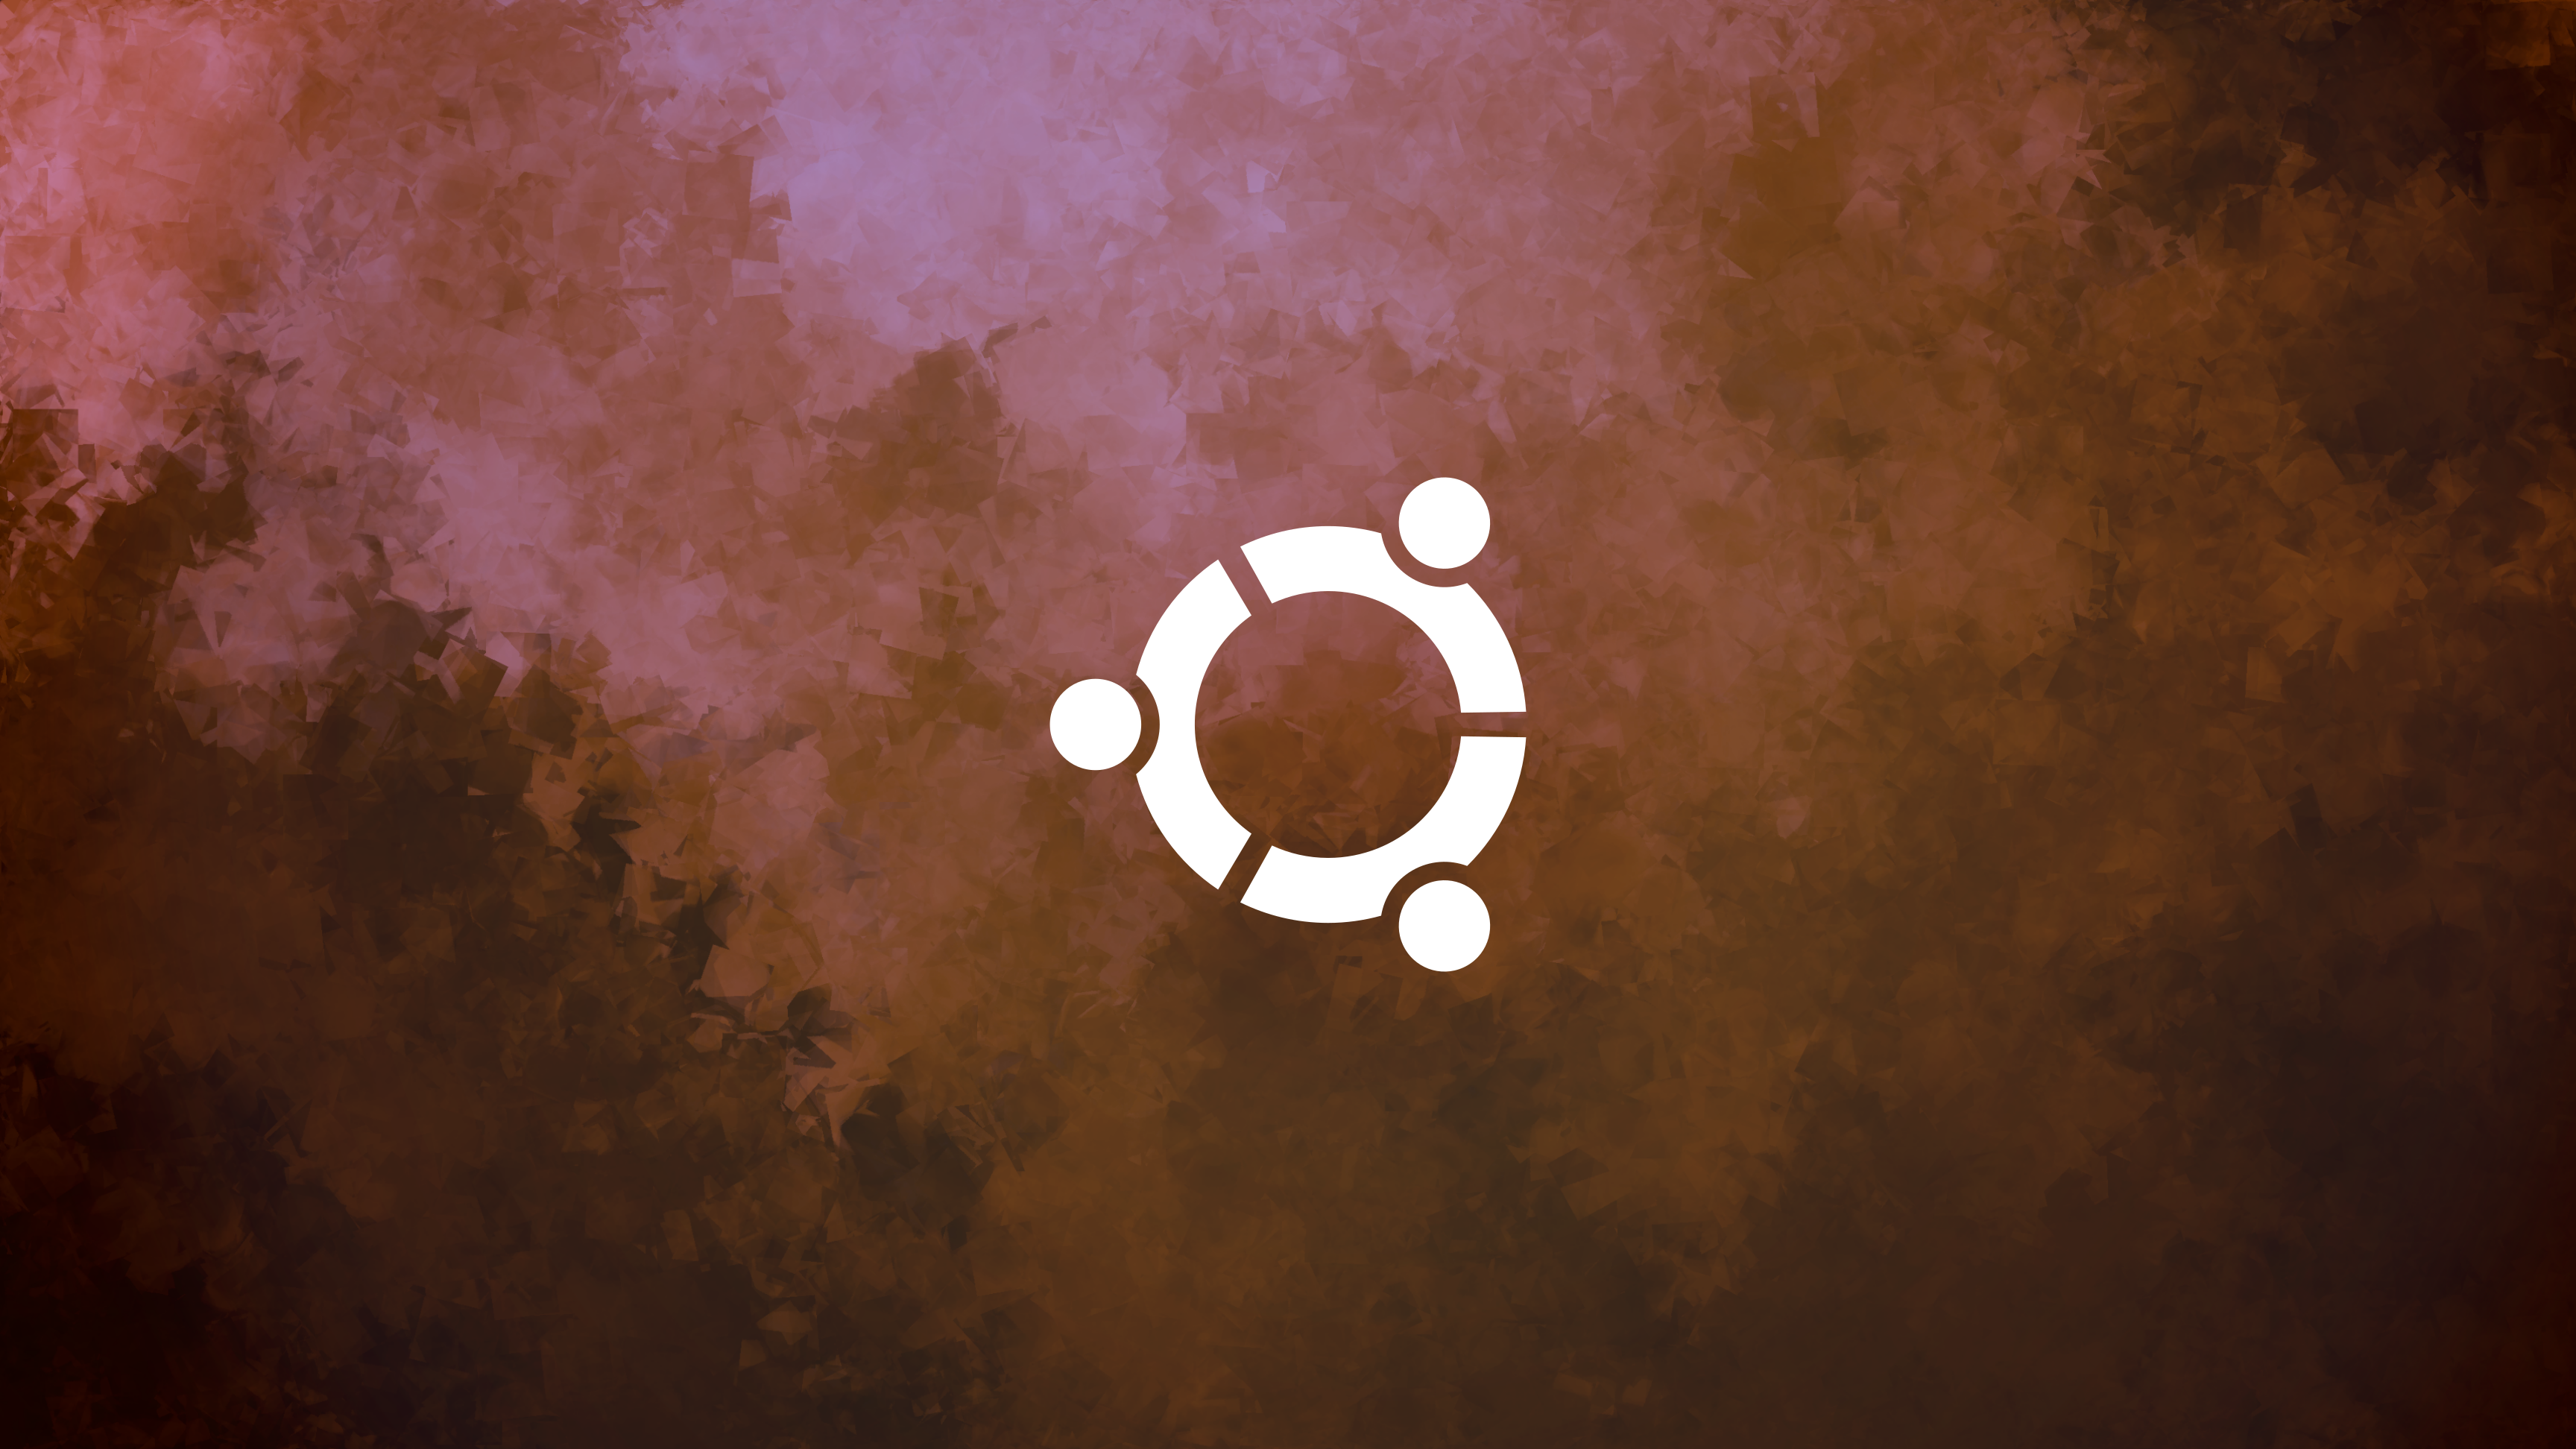 Linux Ubuntu Unix Logo Minimalism Operating System 3456x1944